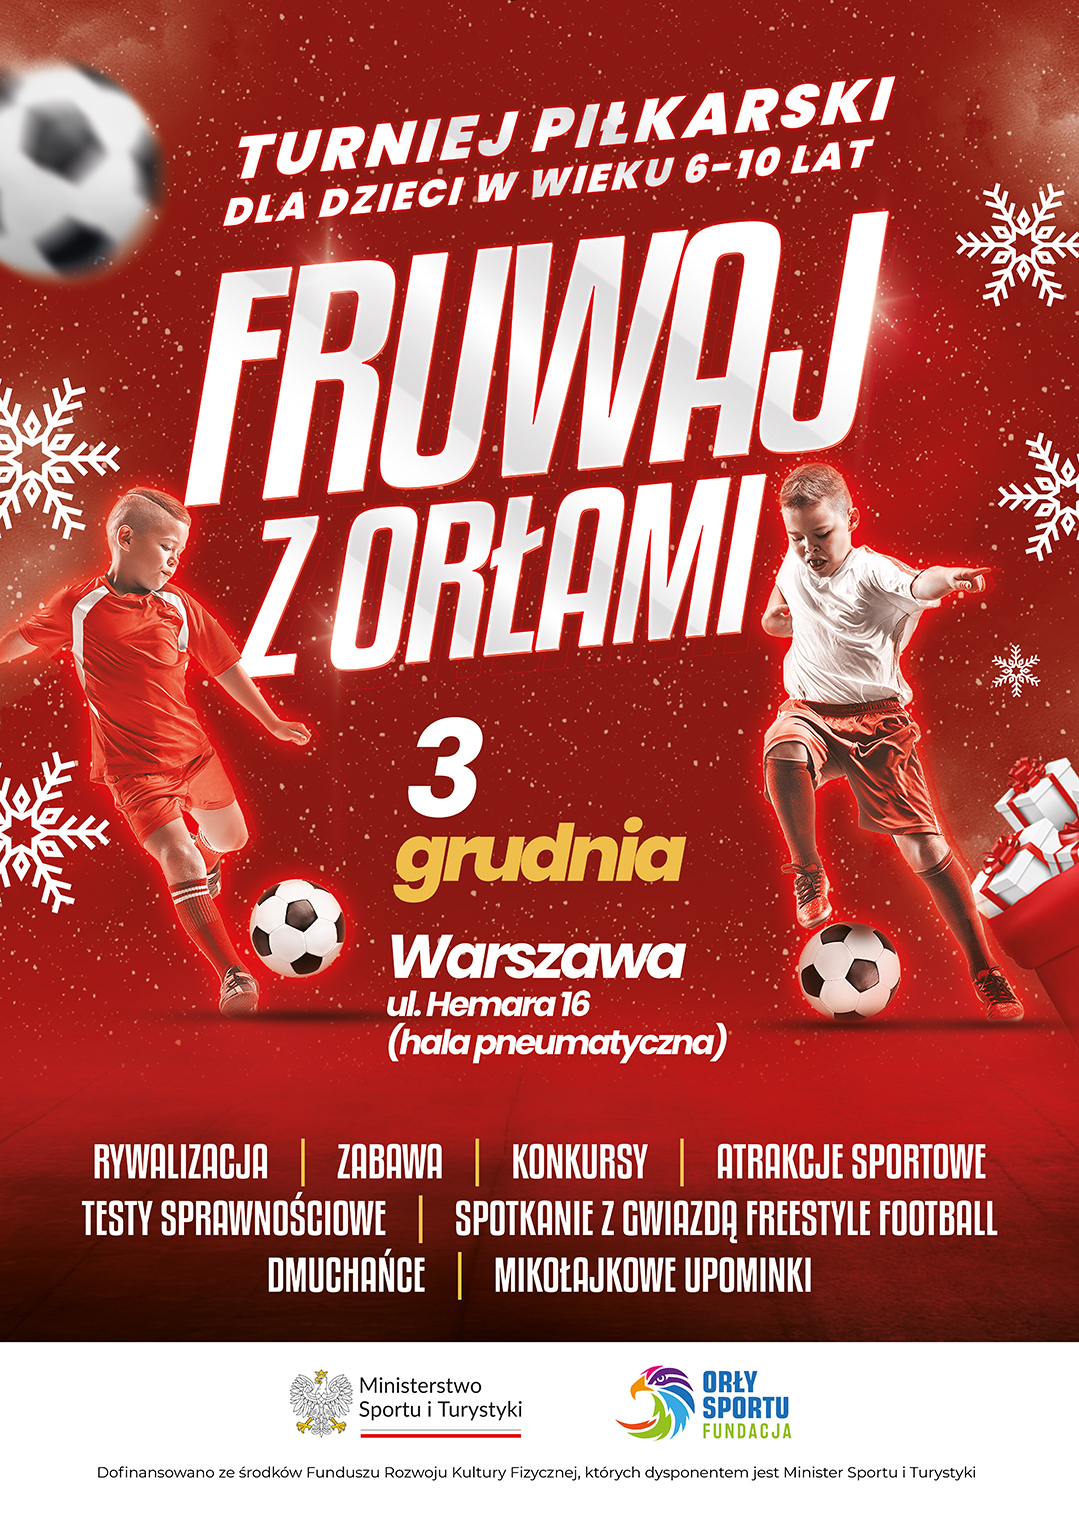 Fruwaj z Orłami - mikołajkowy turniej piłki nożnej!